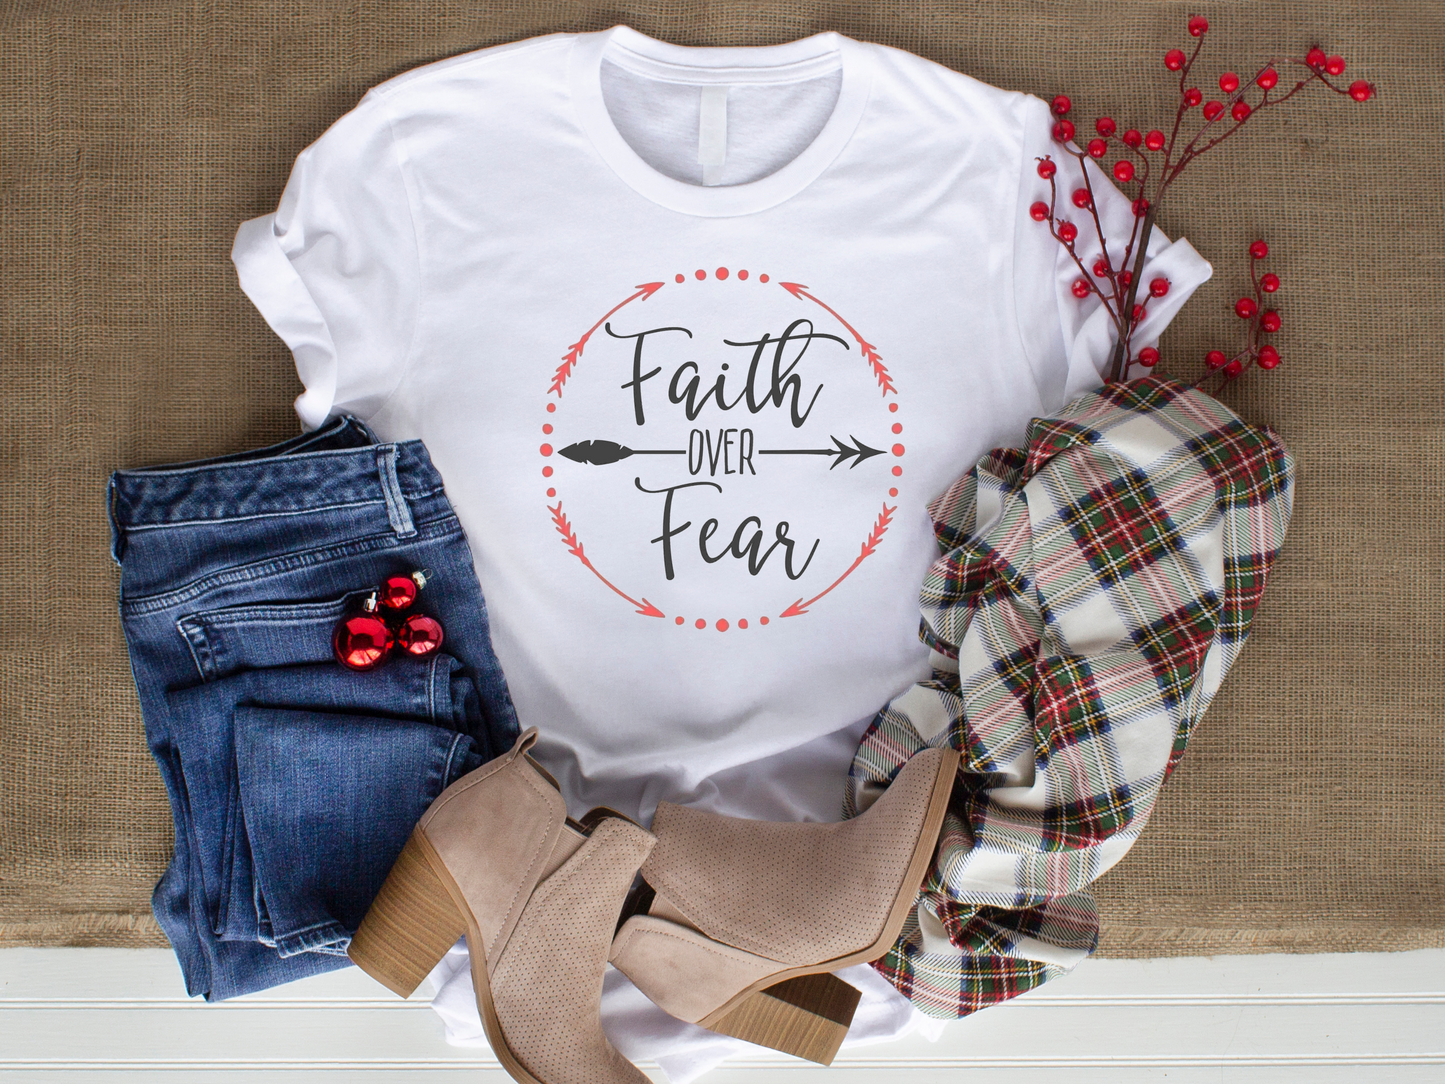 Faith over fear inspirational shirt with arrows, christian t-shirt